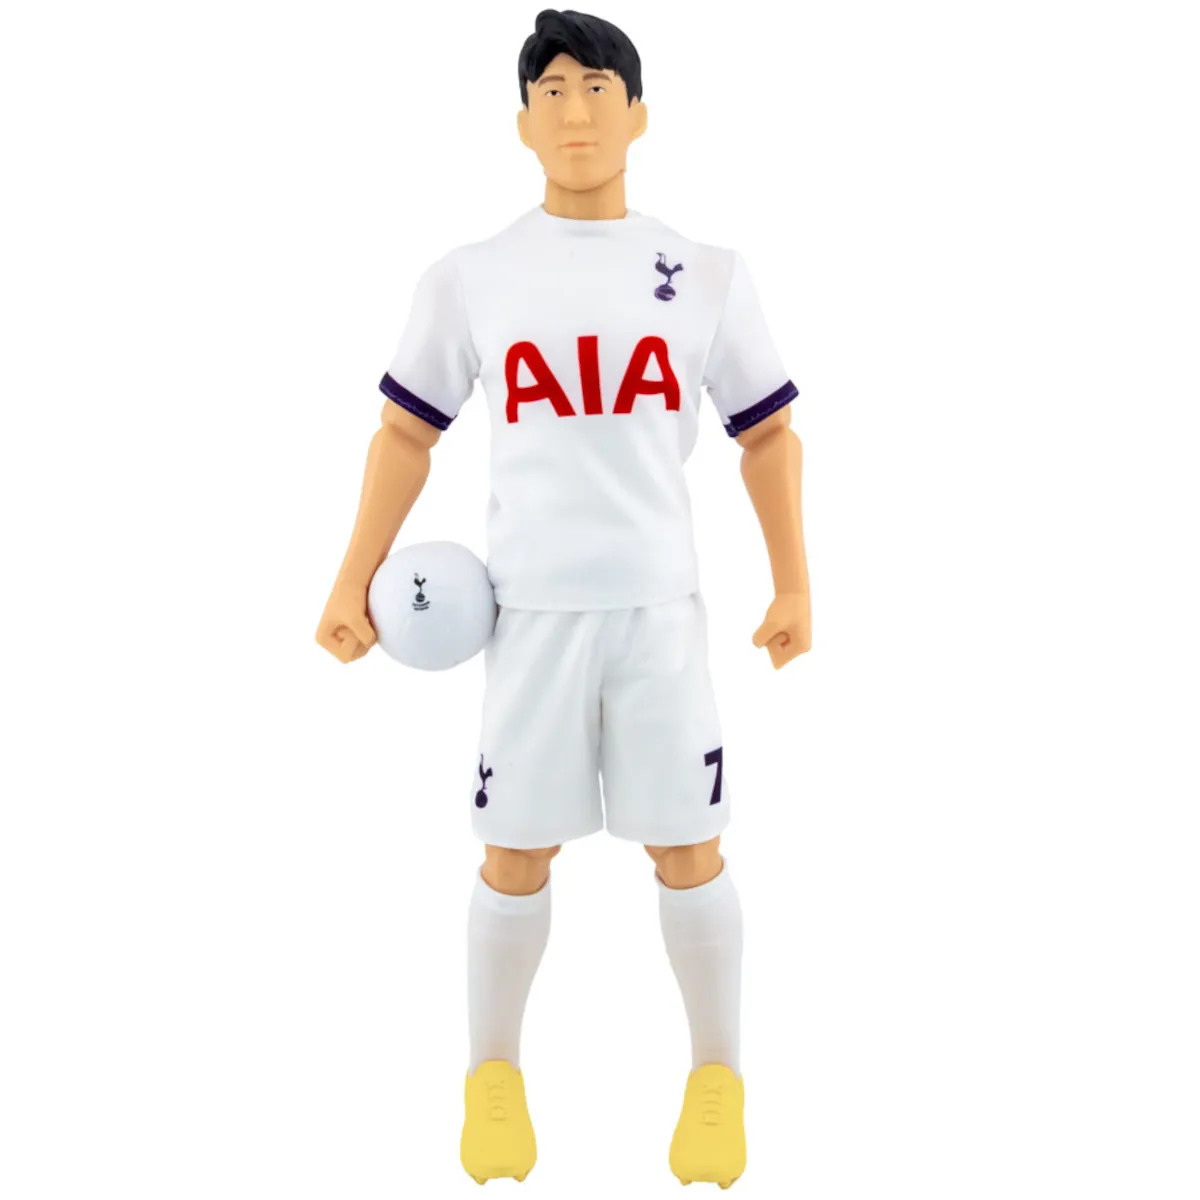 TM-03863 Tottenham Hotspur FC Son Heung-min 30cm Action Figure